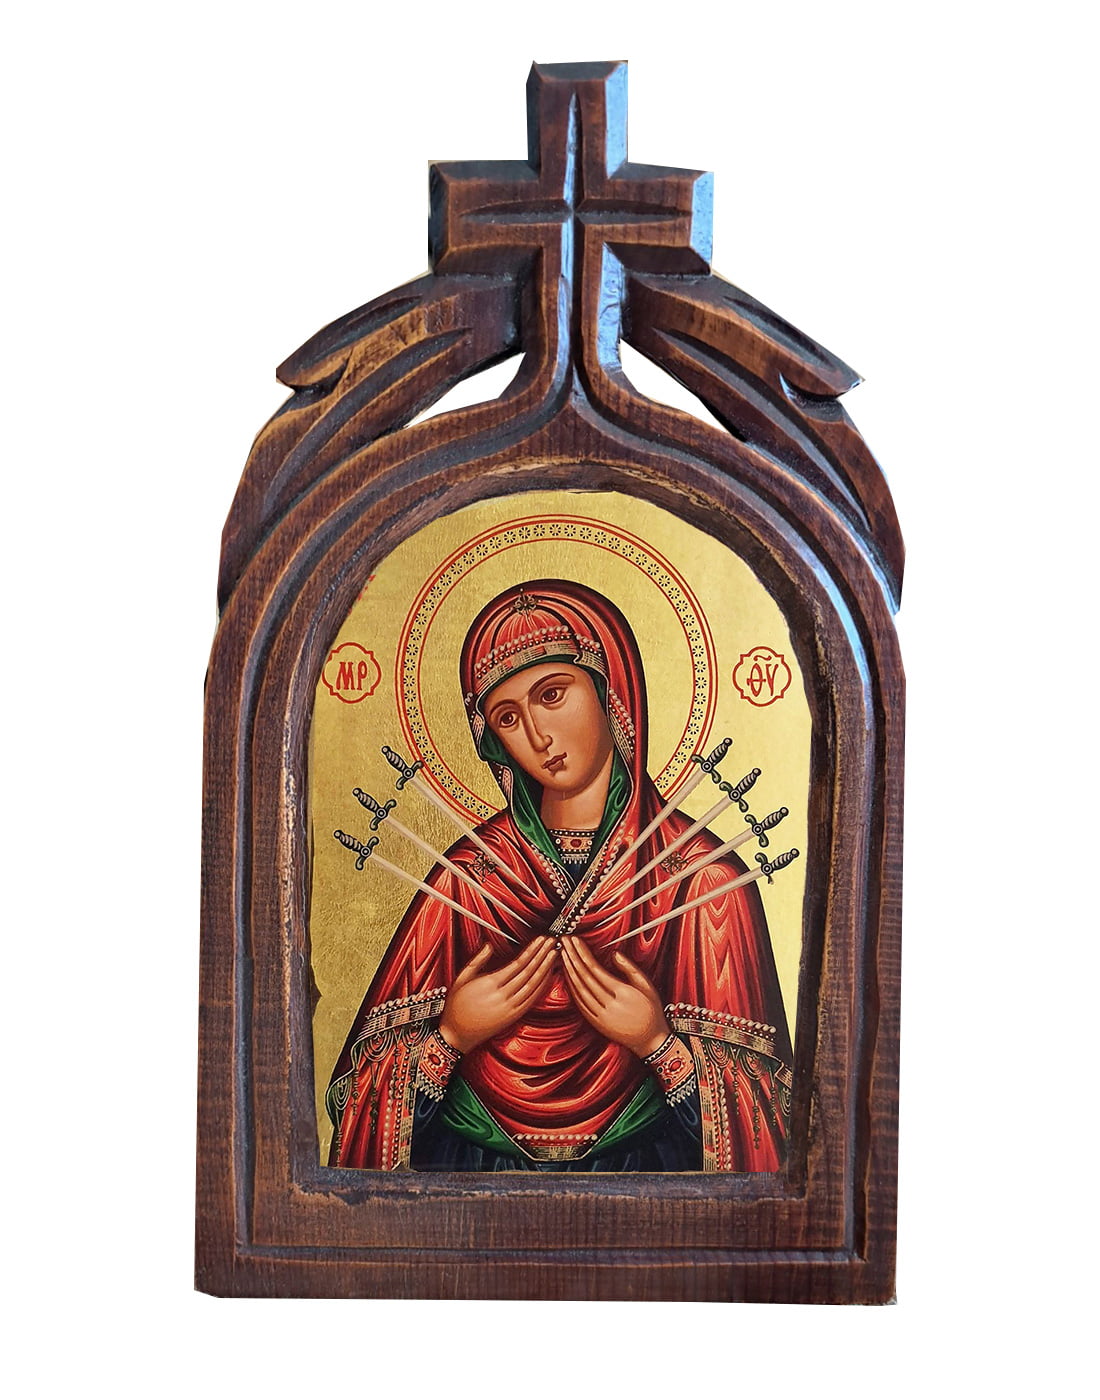 Χειροποίητο Ξυλόγλυπτο Παναγία 7-Σπαθη 7-Swords Virgin Mary Icon